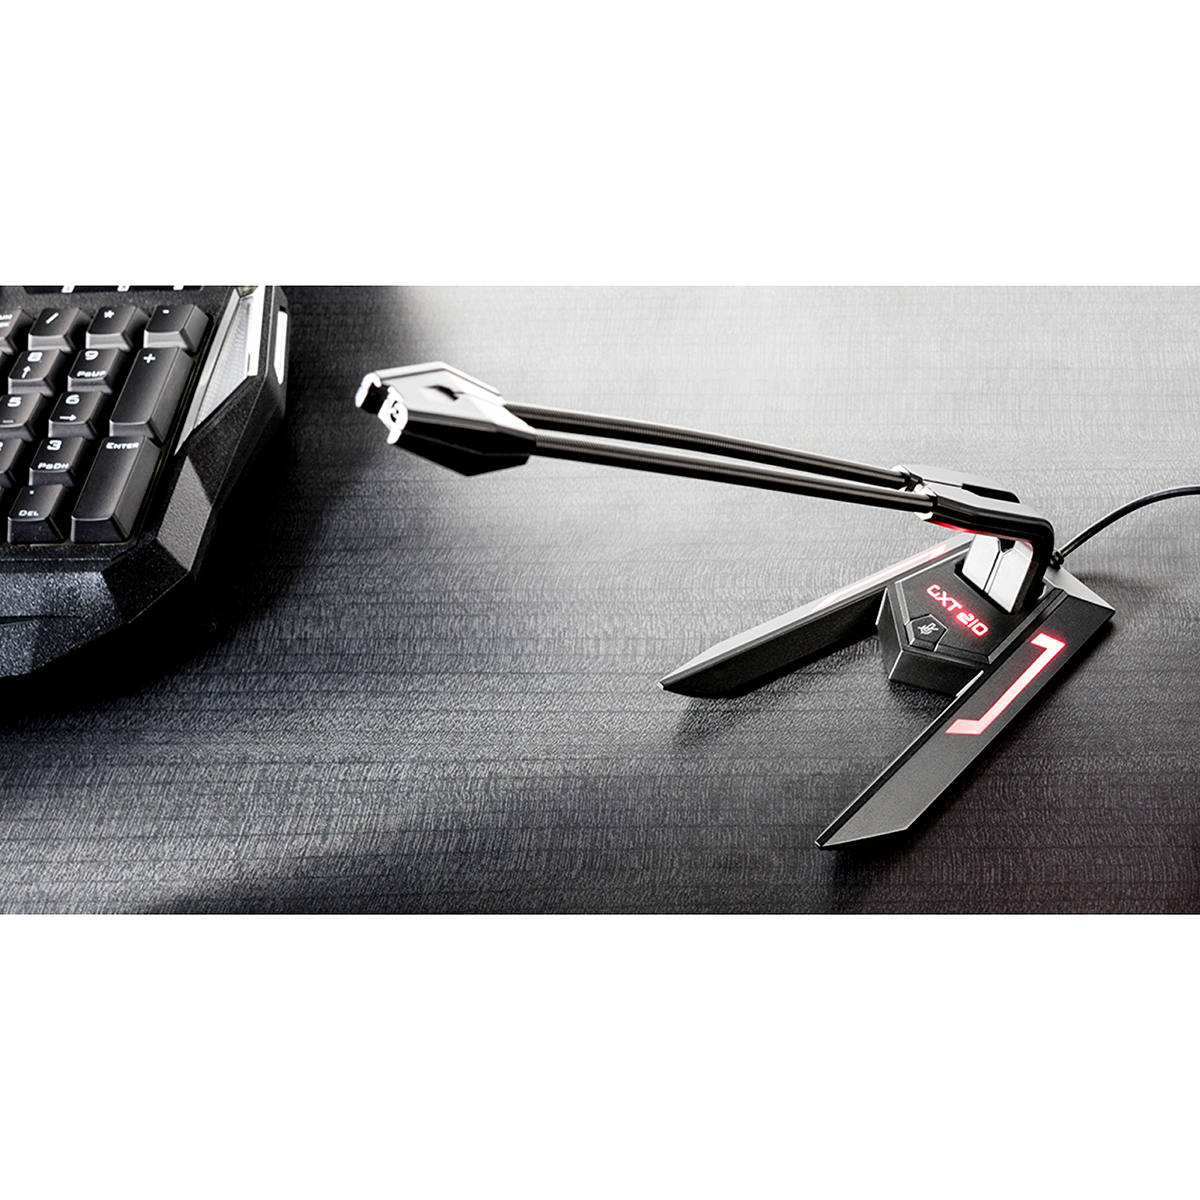 Microfone USB GXT 210 Scorp com Suporte Flexível e Regulável Botão Mute Cabo 1.5m Trust